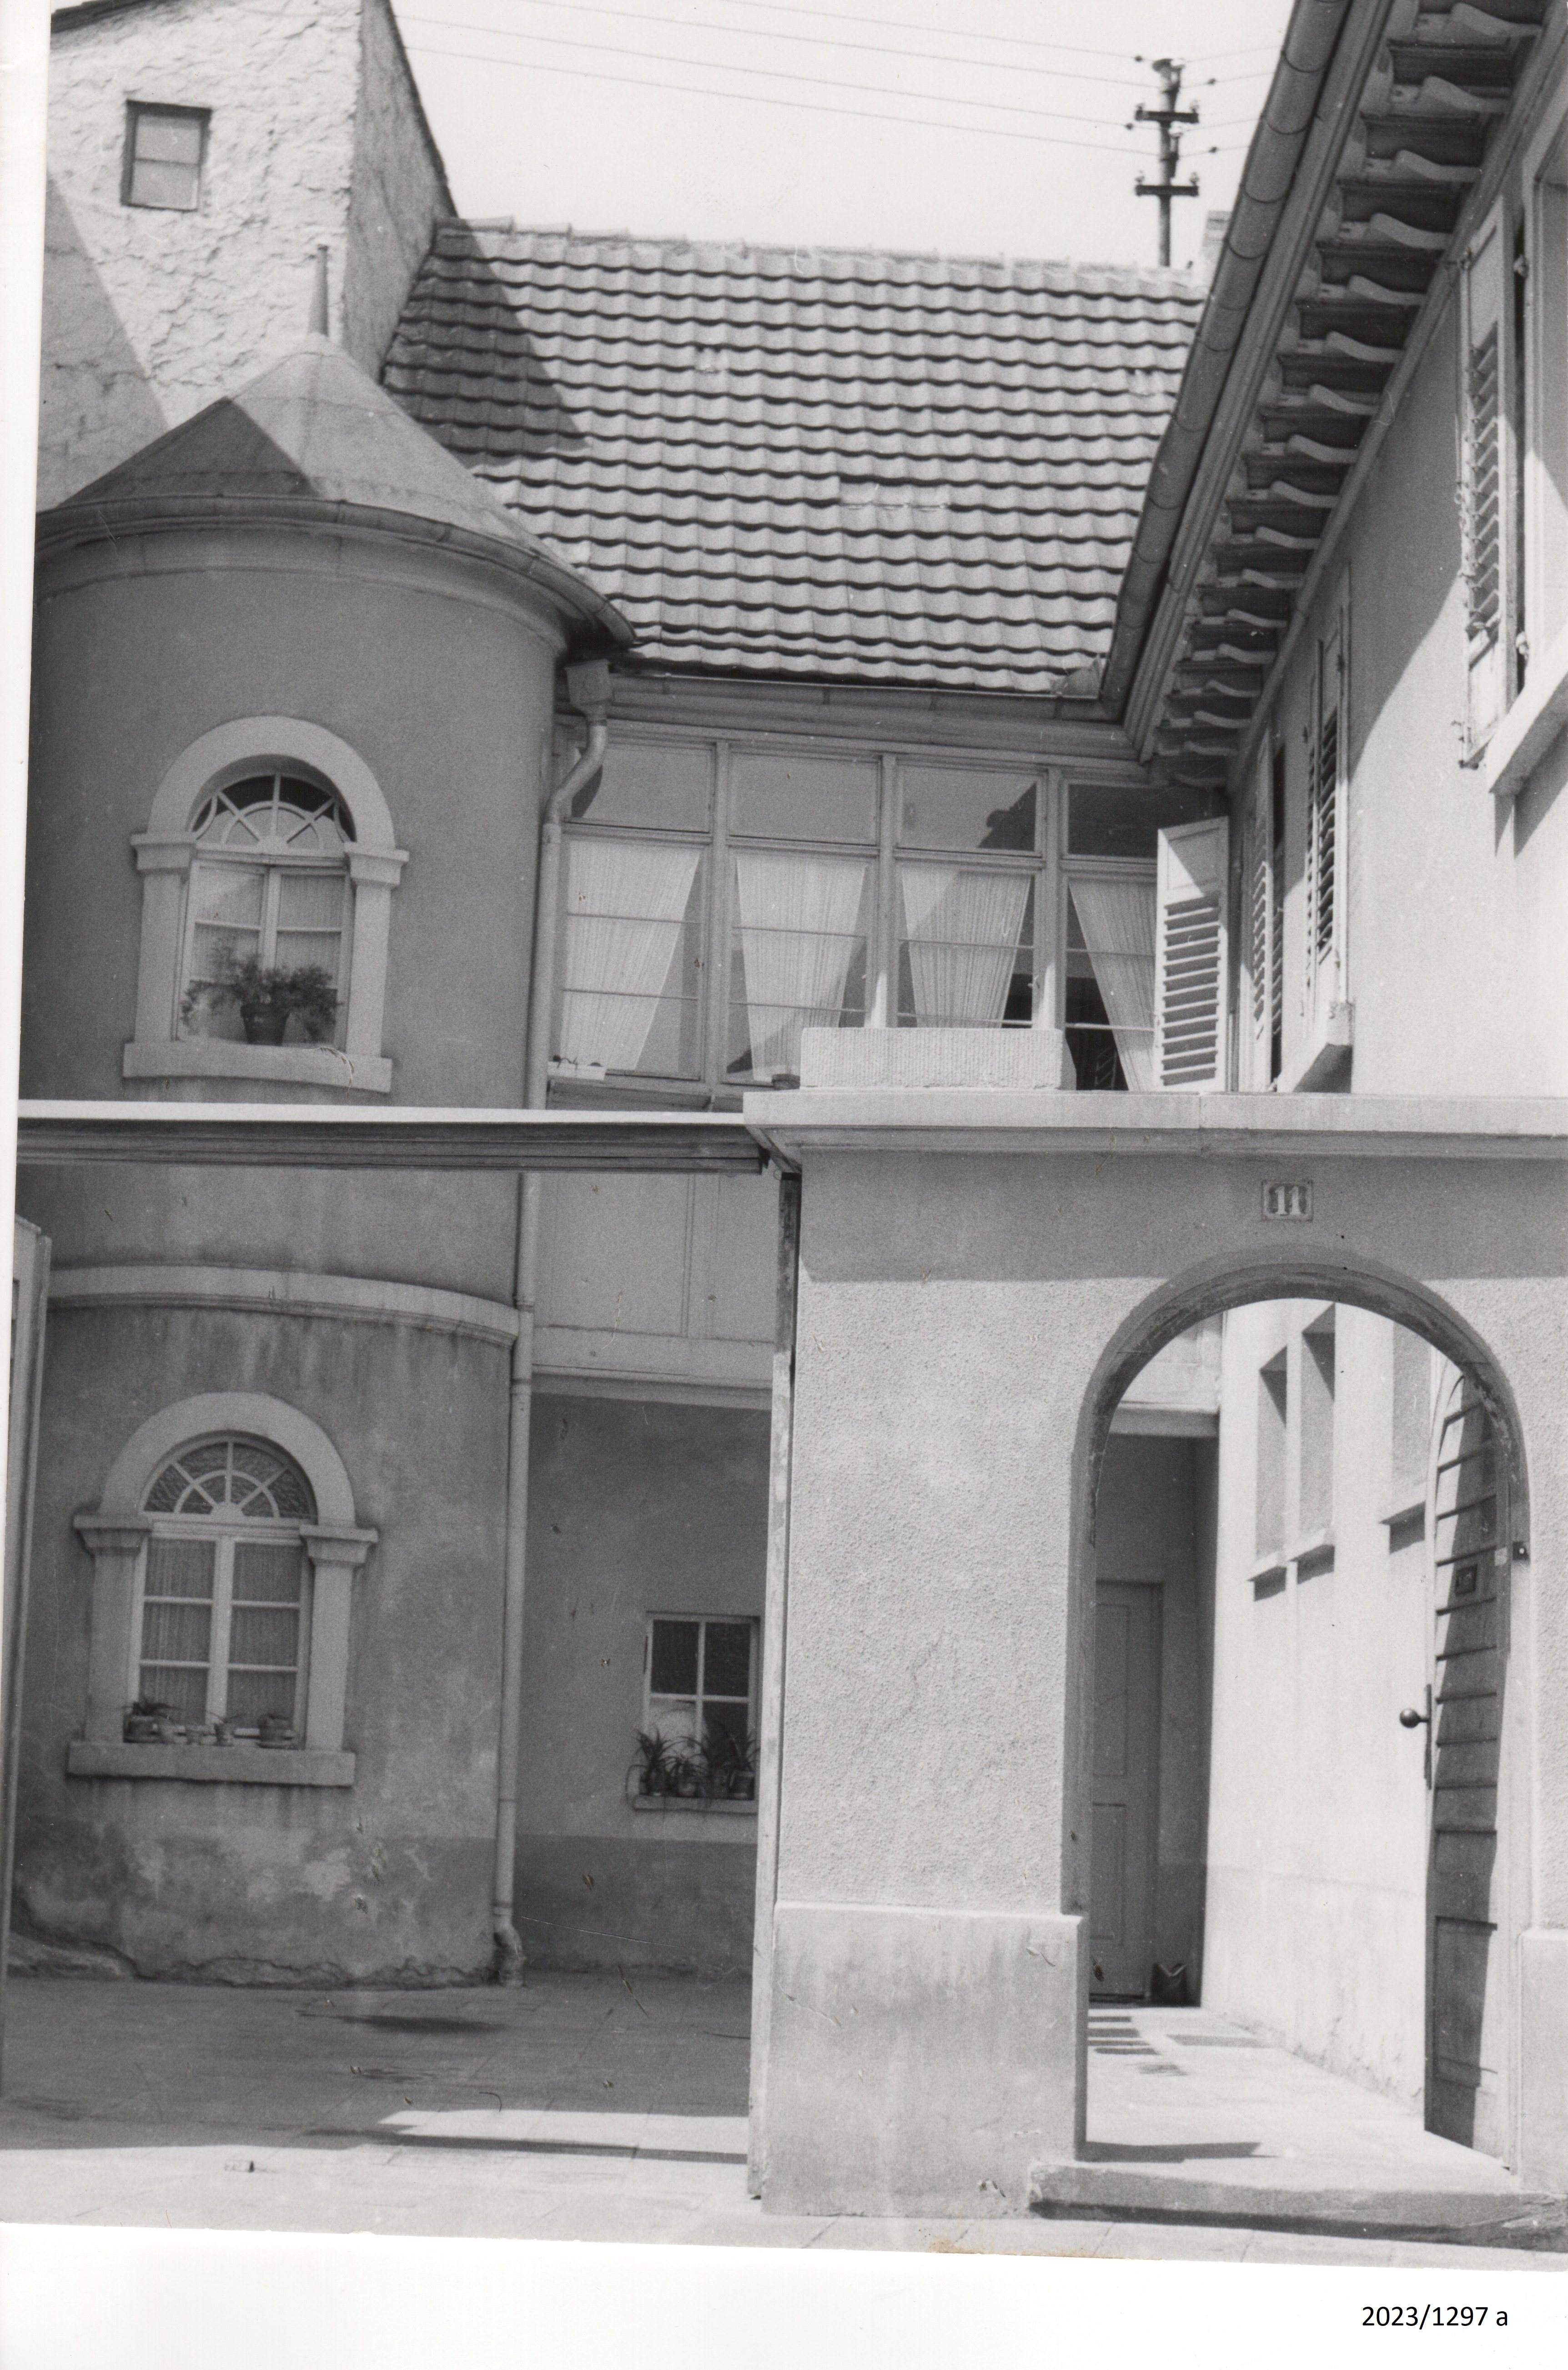 Bad Dürkheim, Blick auf ein Wohnhaus Ecke Mannheimer Straße, Philipp-Fauth-Straße, 1960er Jahre (Stadtmuseum Bad Dürkheim im Kulturzentrum Haus Catoir CC BY-NC-SA)